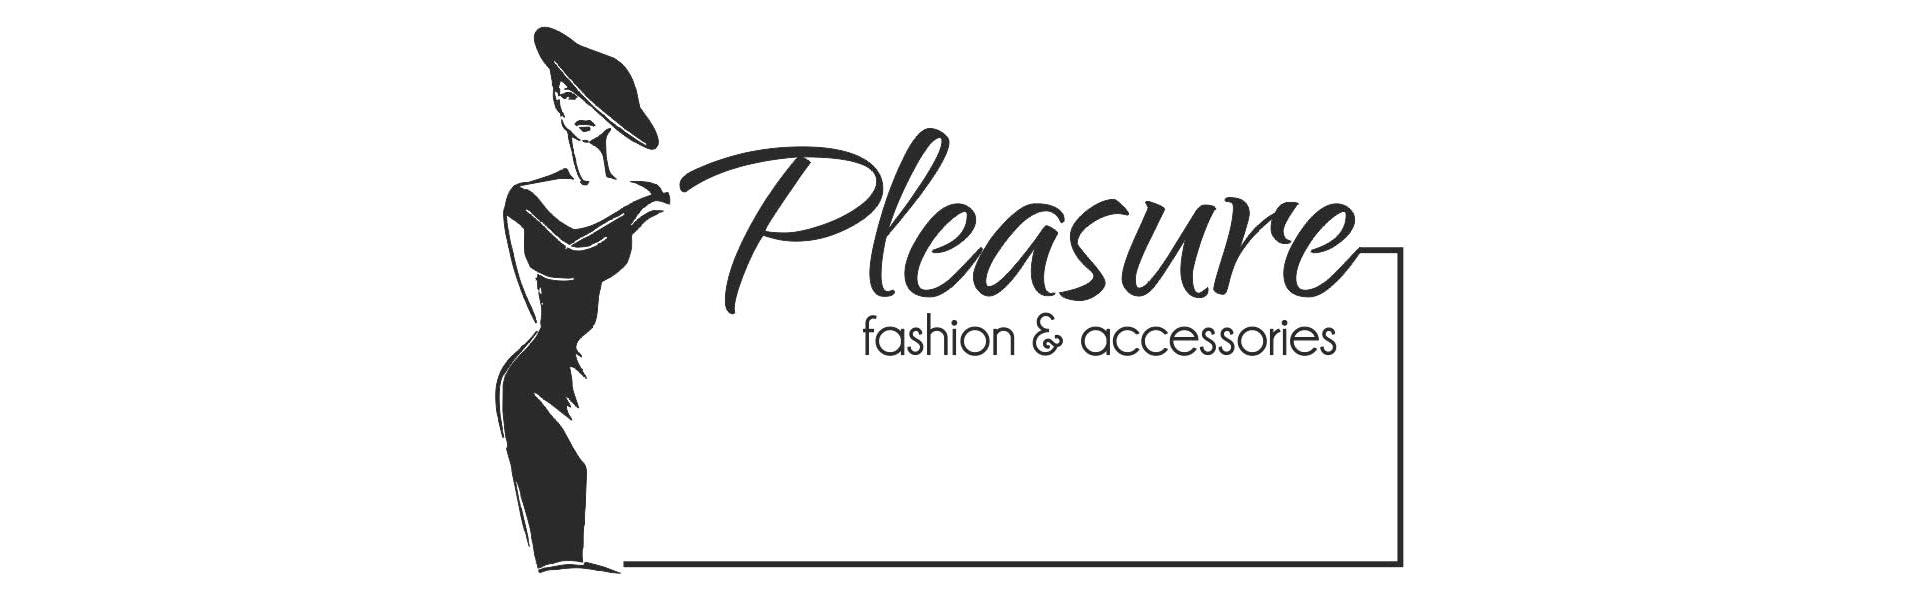 Pleasure fashion accessories